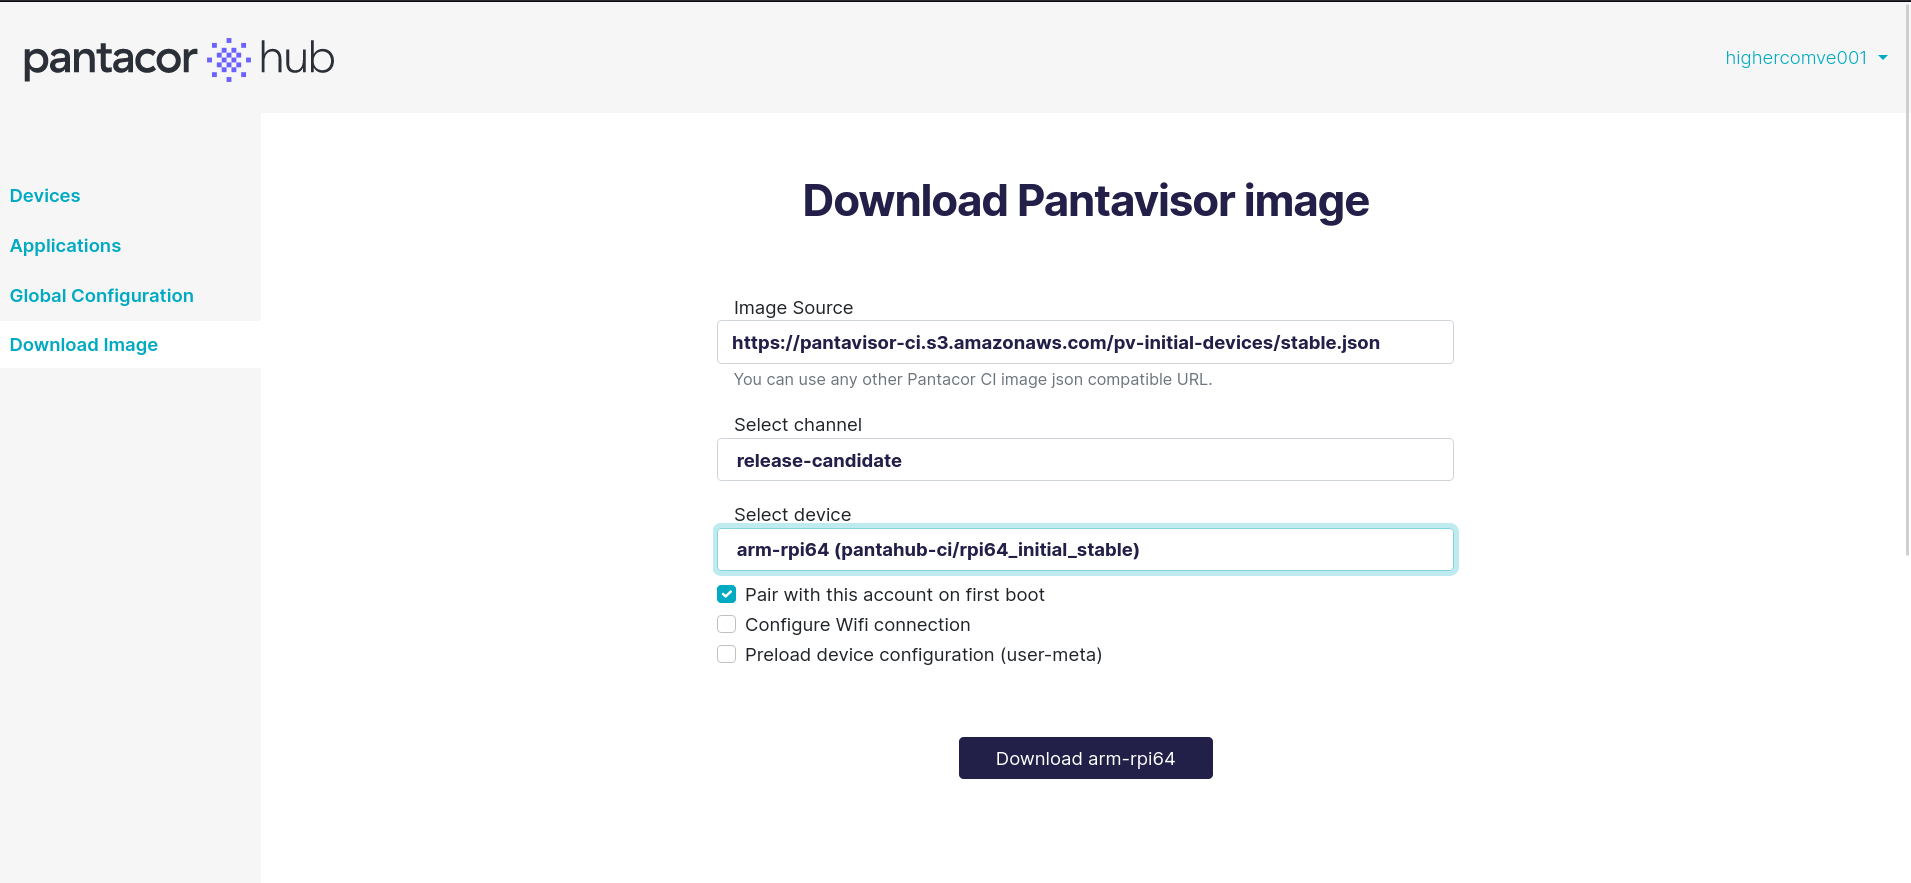 Download Pantavisor image